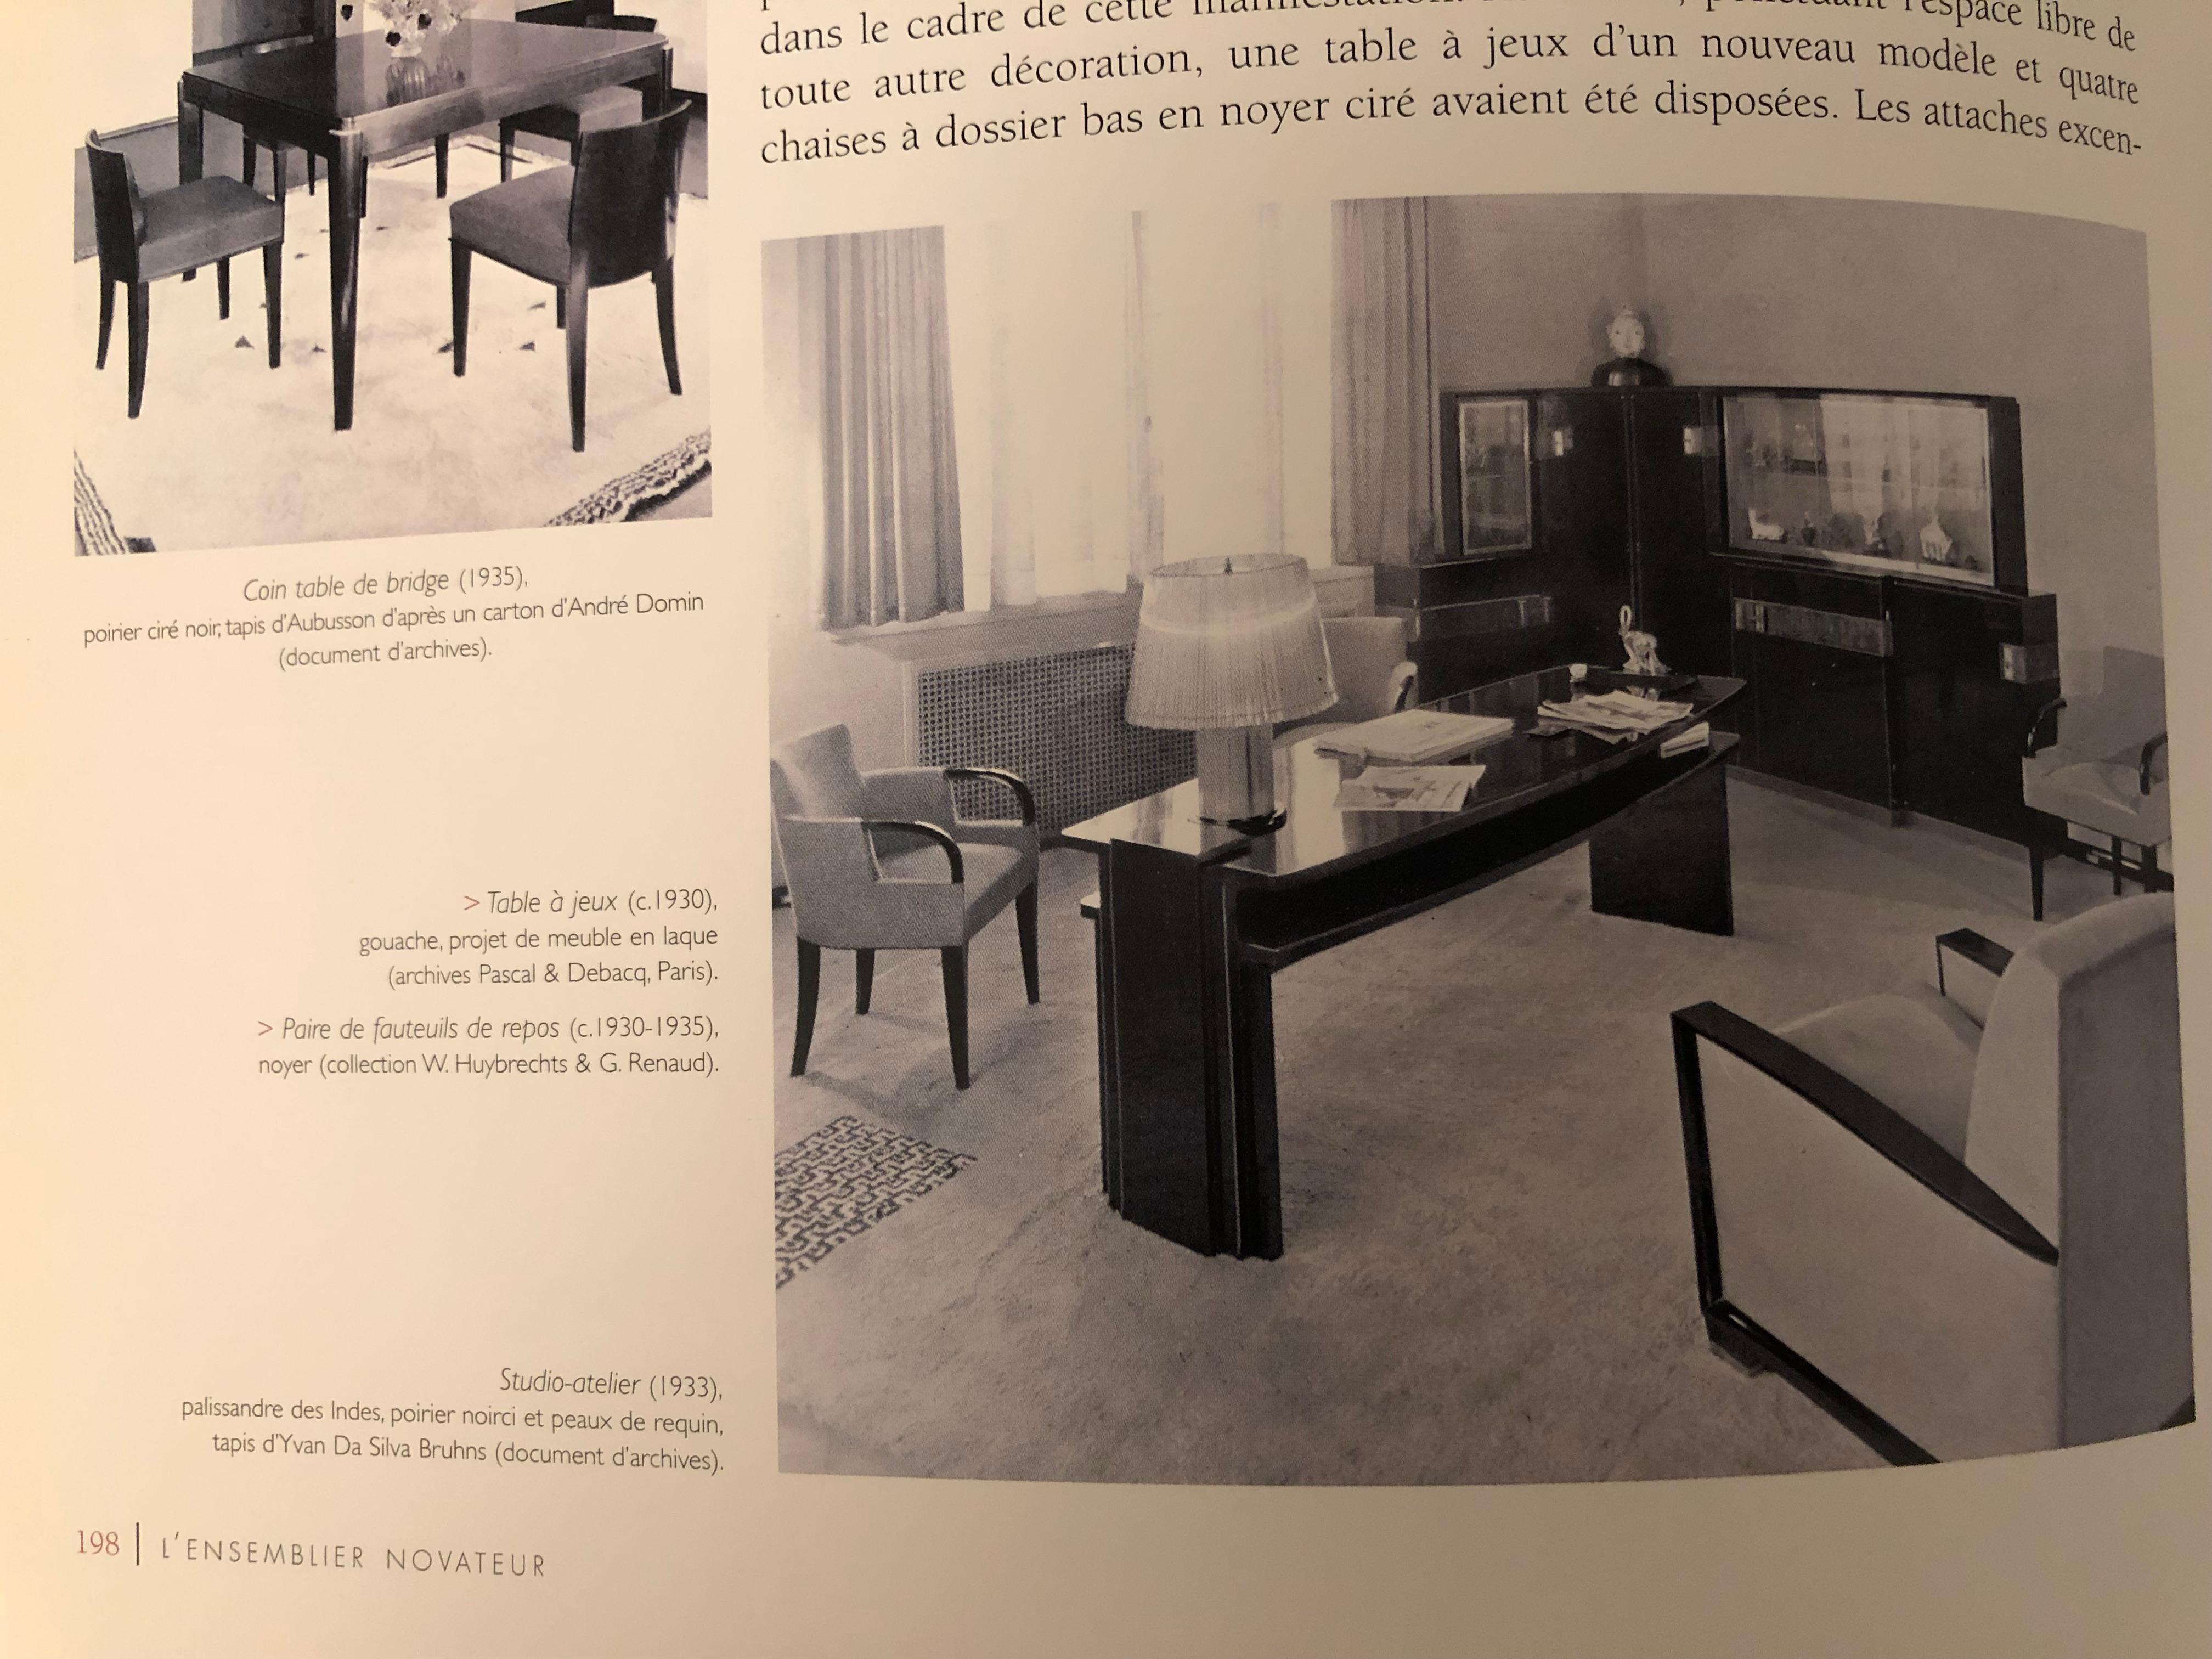 Dominique (André Domin & Marcel Genevrière): A fine French 1930s darkened wood desk armchair.

Documentation; Félix Marcilhac, 